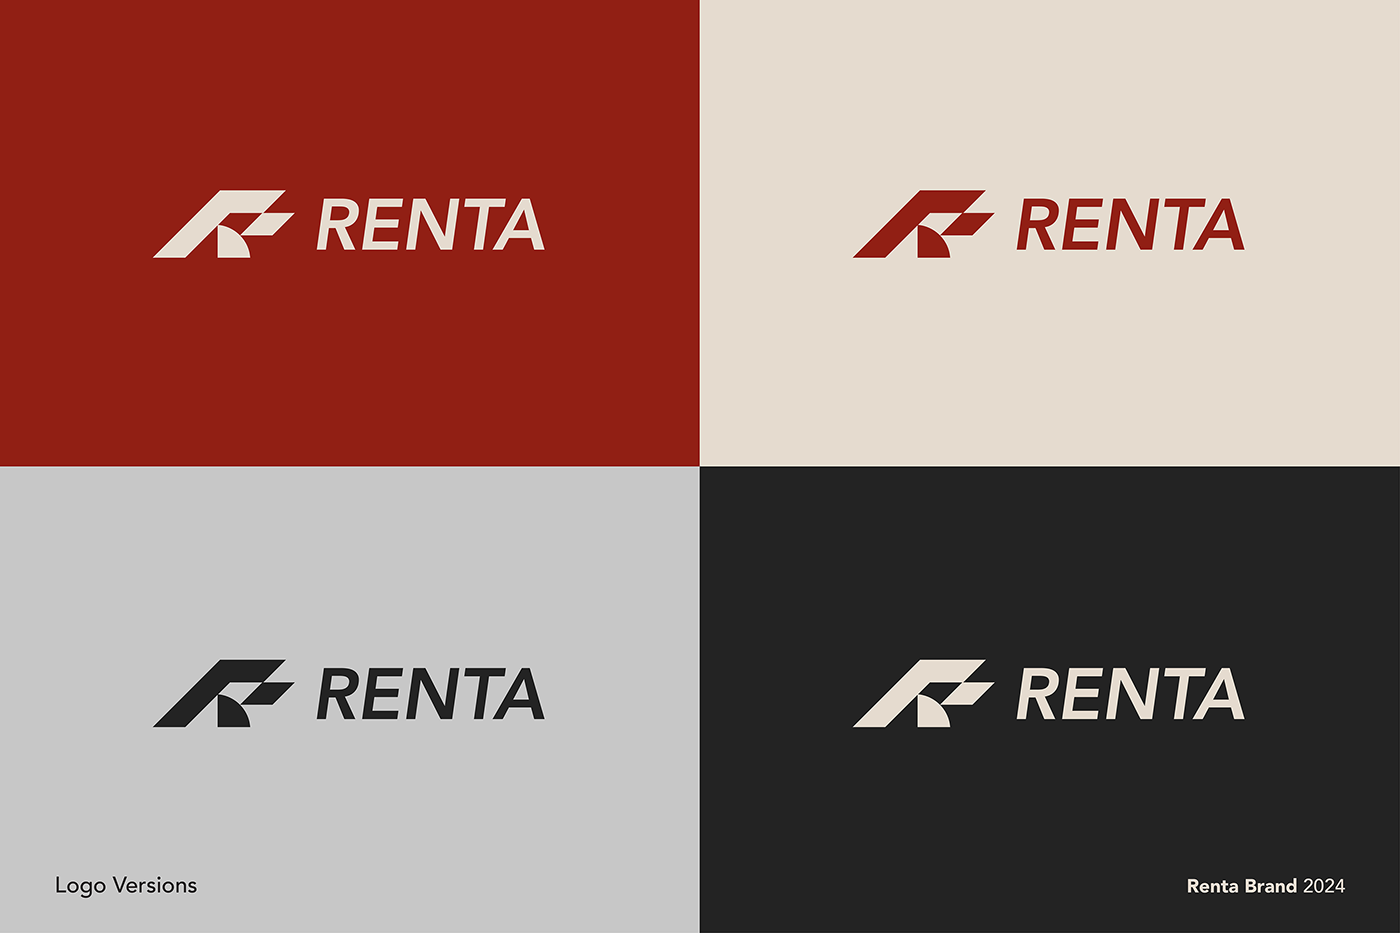 This is Renta logo design